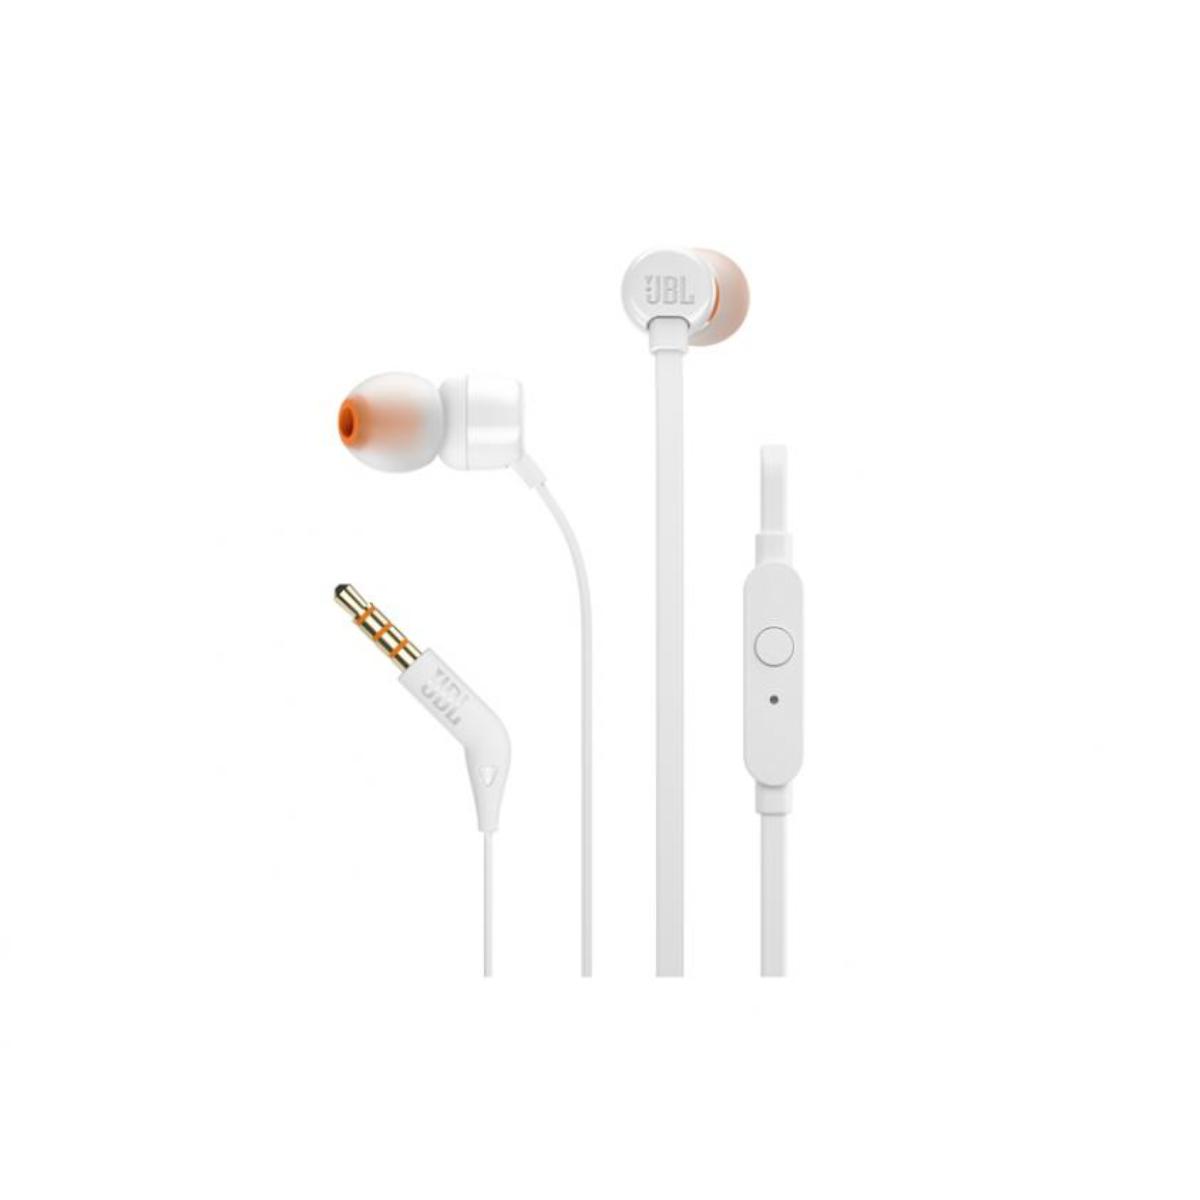 Smart T110 | Headphones | Jbl Brands Buy In-Ear | JBL Blue